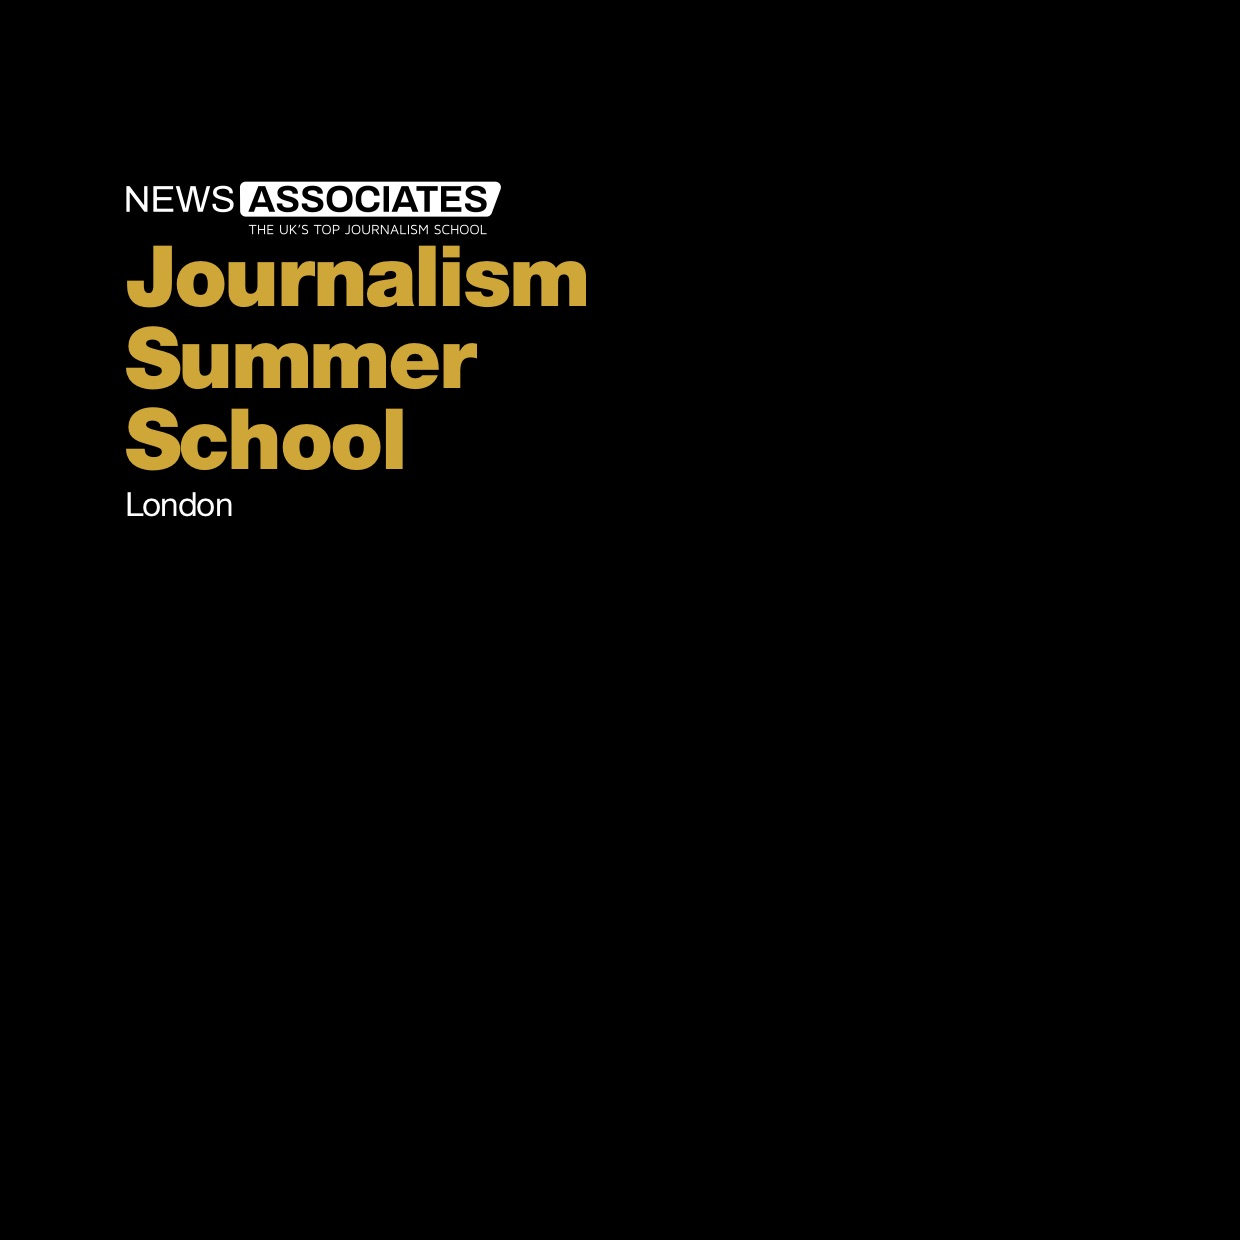 Front page of Journalism Summer School brochure